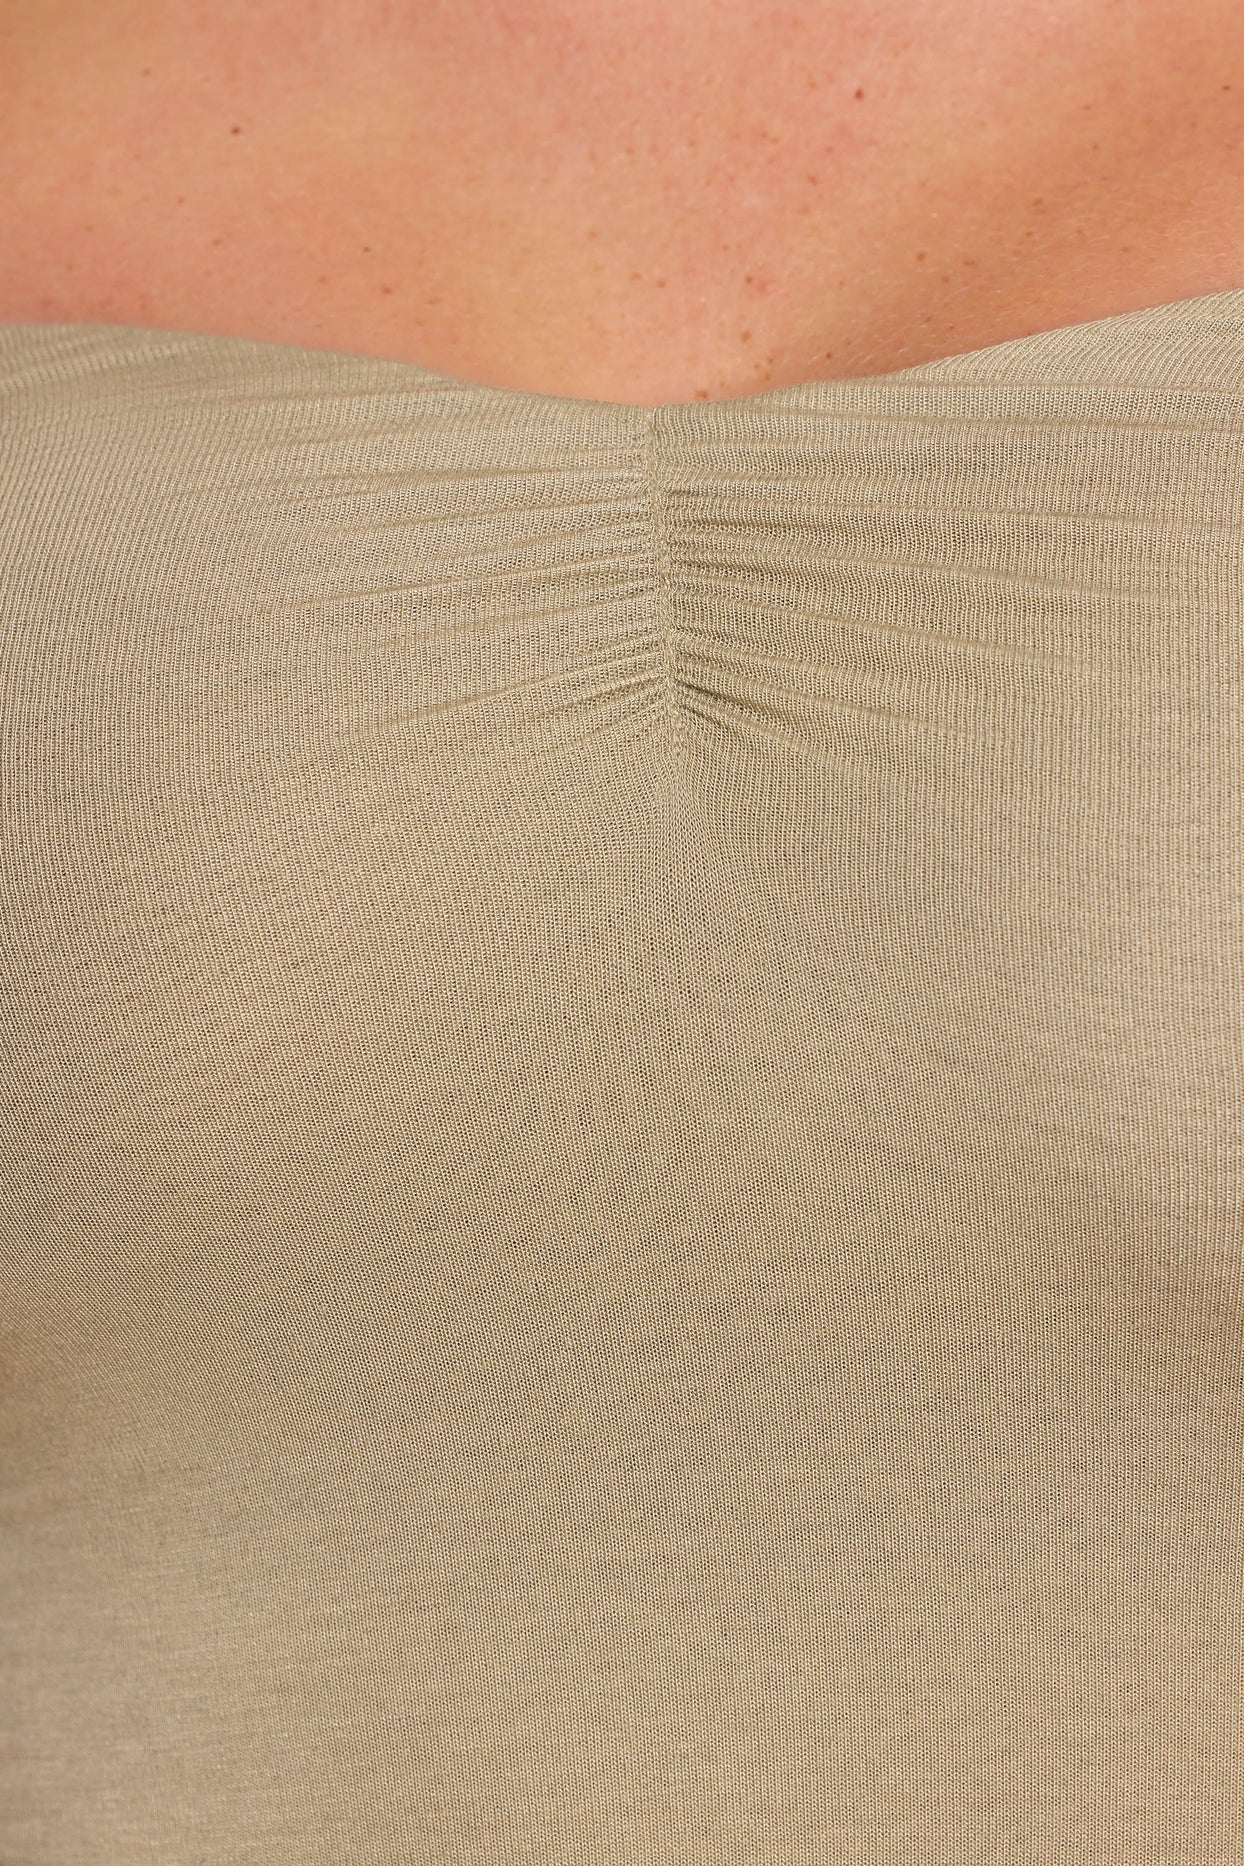 Vestido maxi com mistura de caxemira modal de manga comprida fora dos ombros em cinza claro